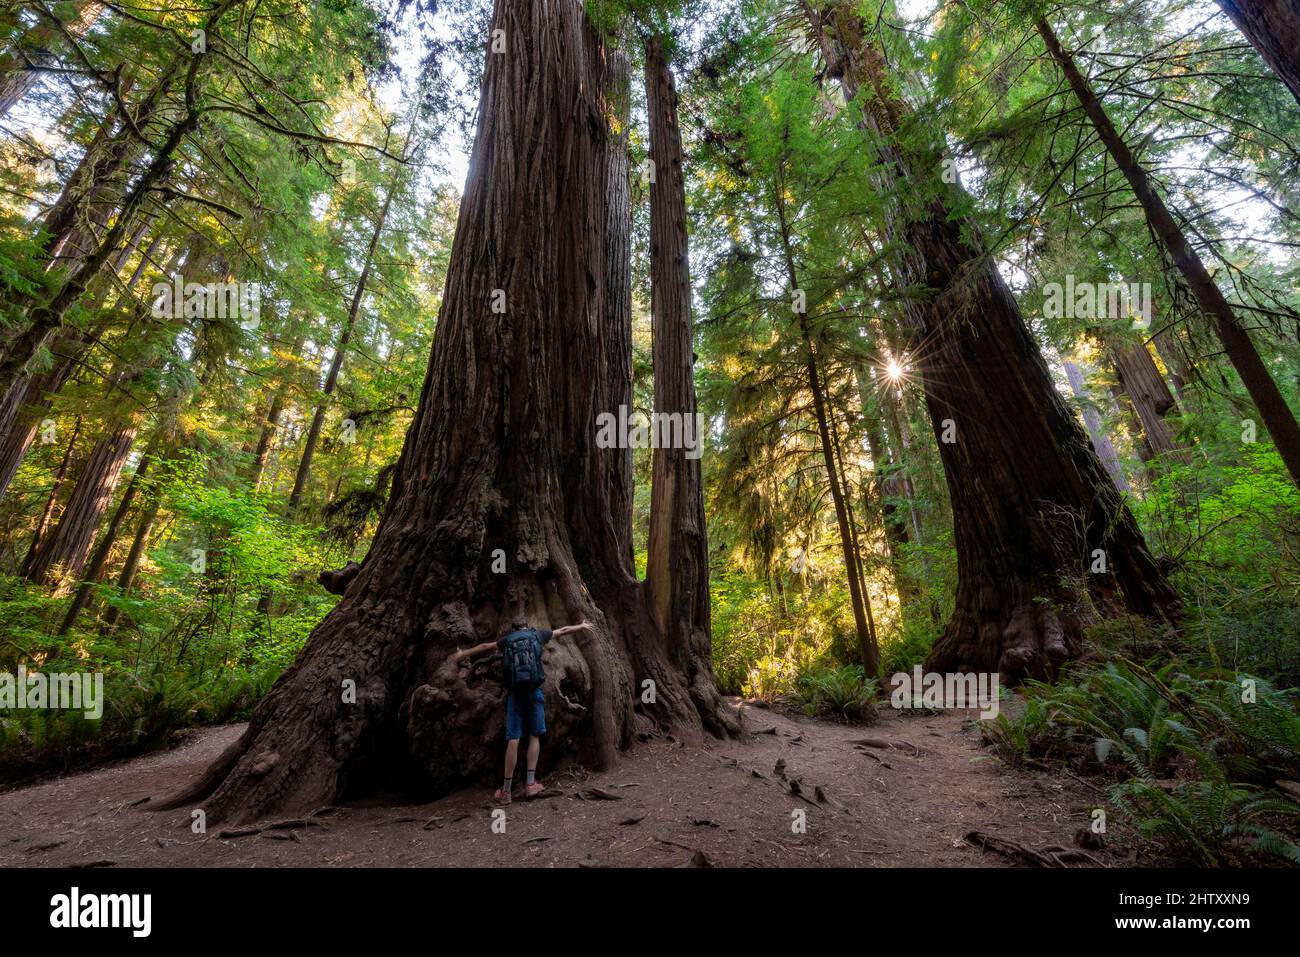 Giovane uomo che abbraccia una sequoia, costeggia le sequoie (Sequoia sempervirens), foresta con felci e vegetazione densa, sunstar, Jedediah Smith Redwoods state Foto Stock